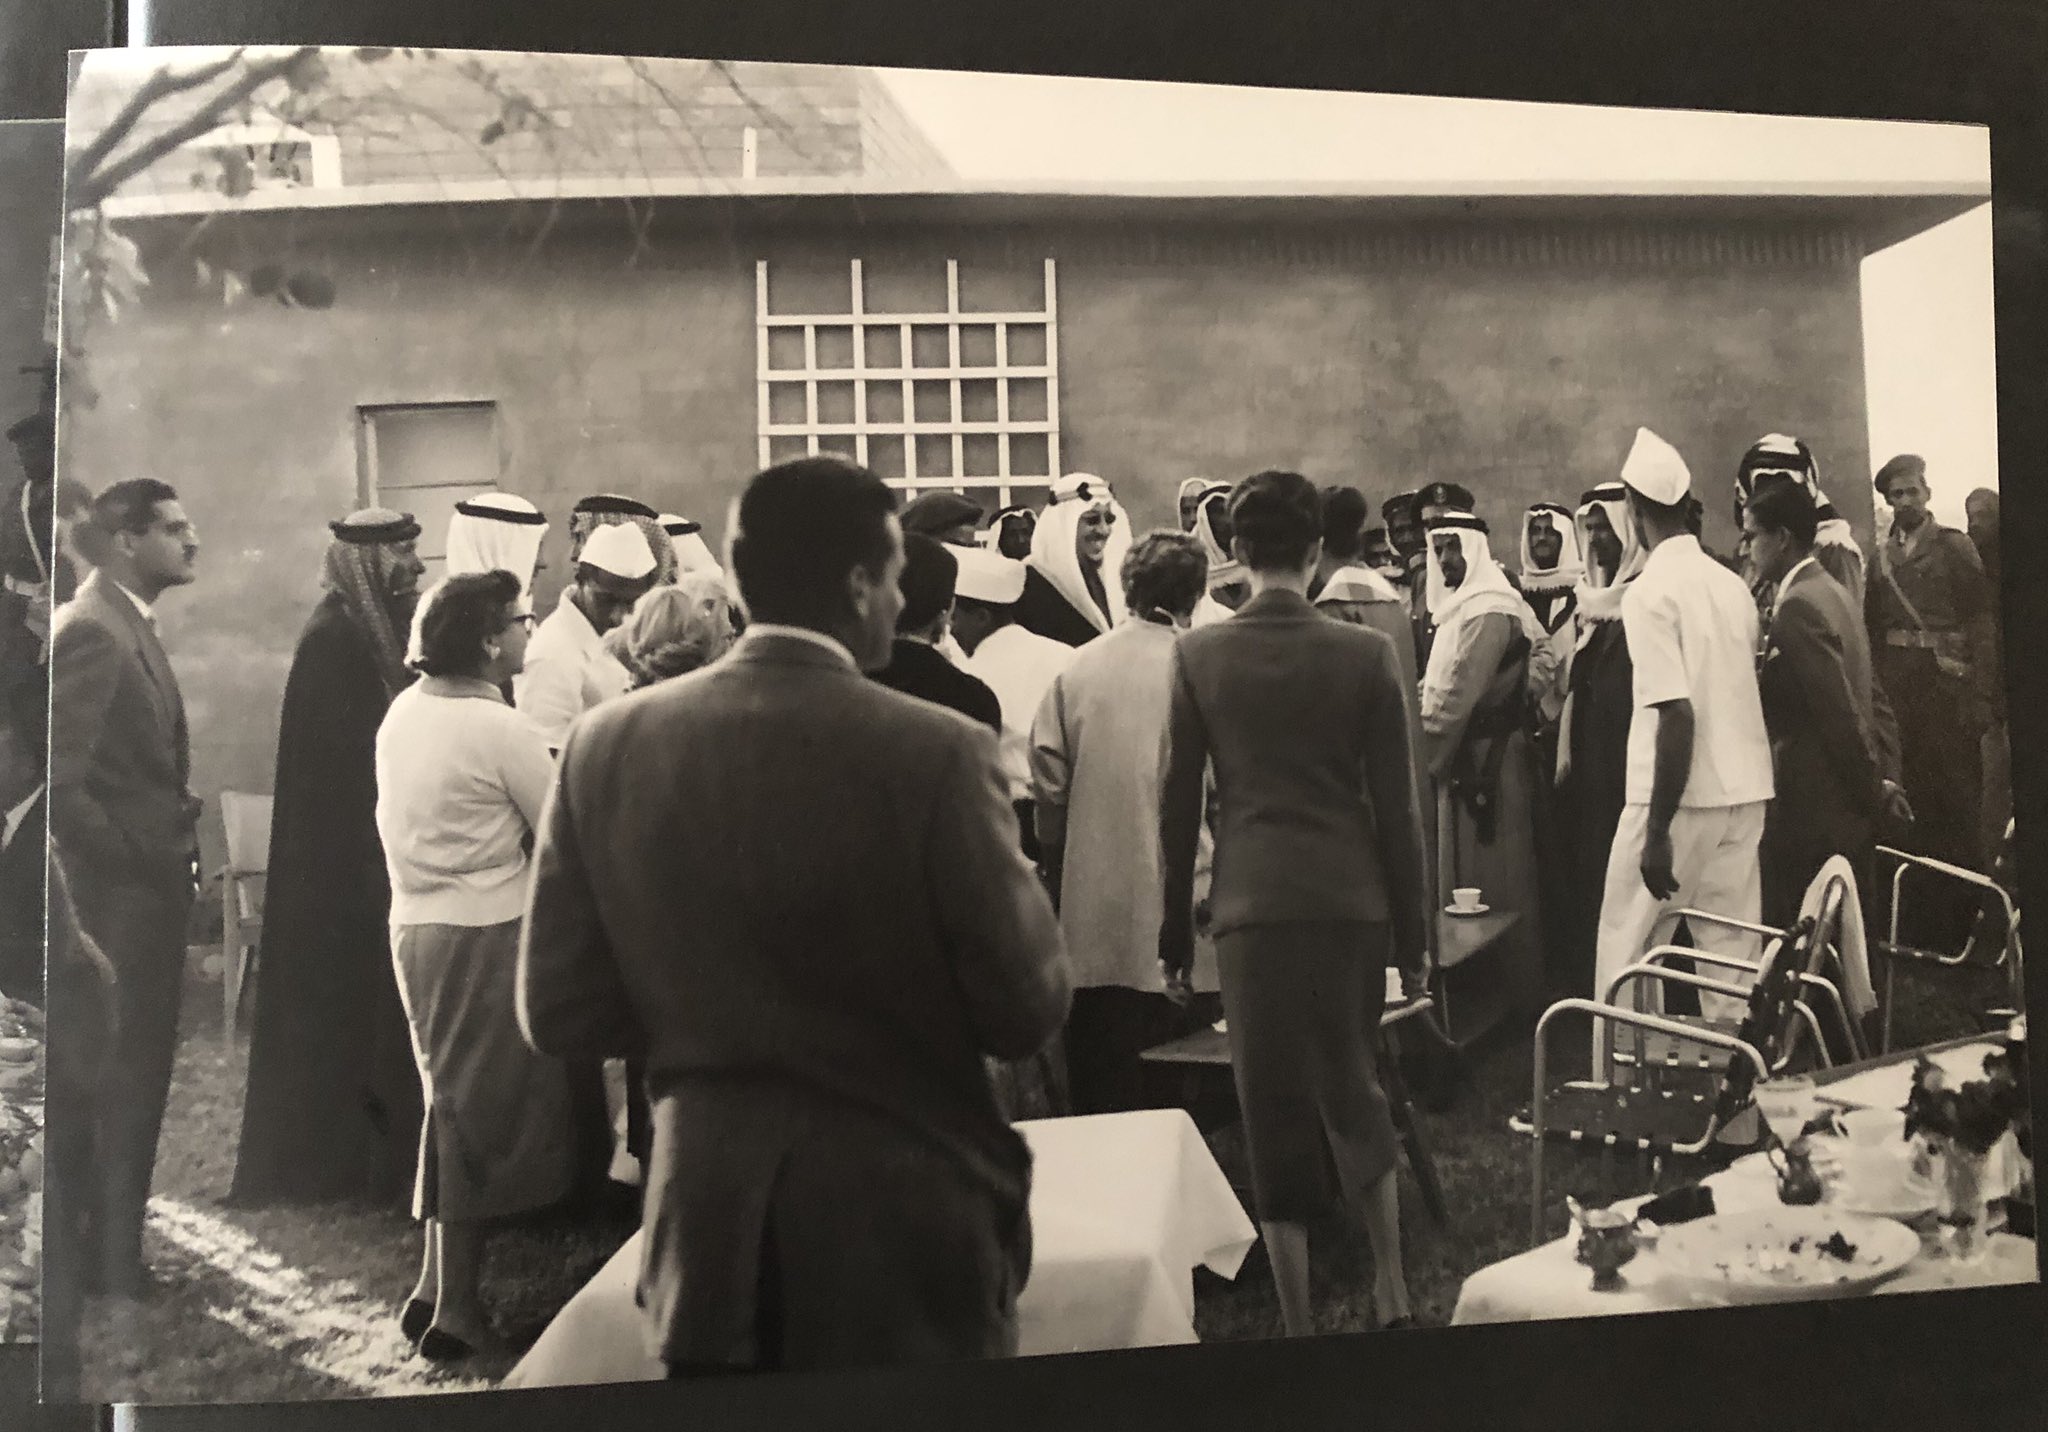 الملك سعود رحمه الله في زيارة لمدينة القيصومة في شهر مارس من عام 1959.